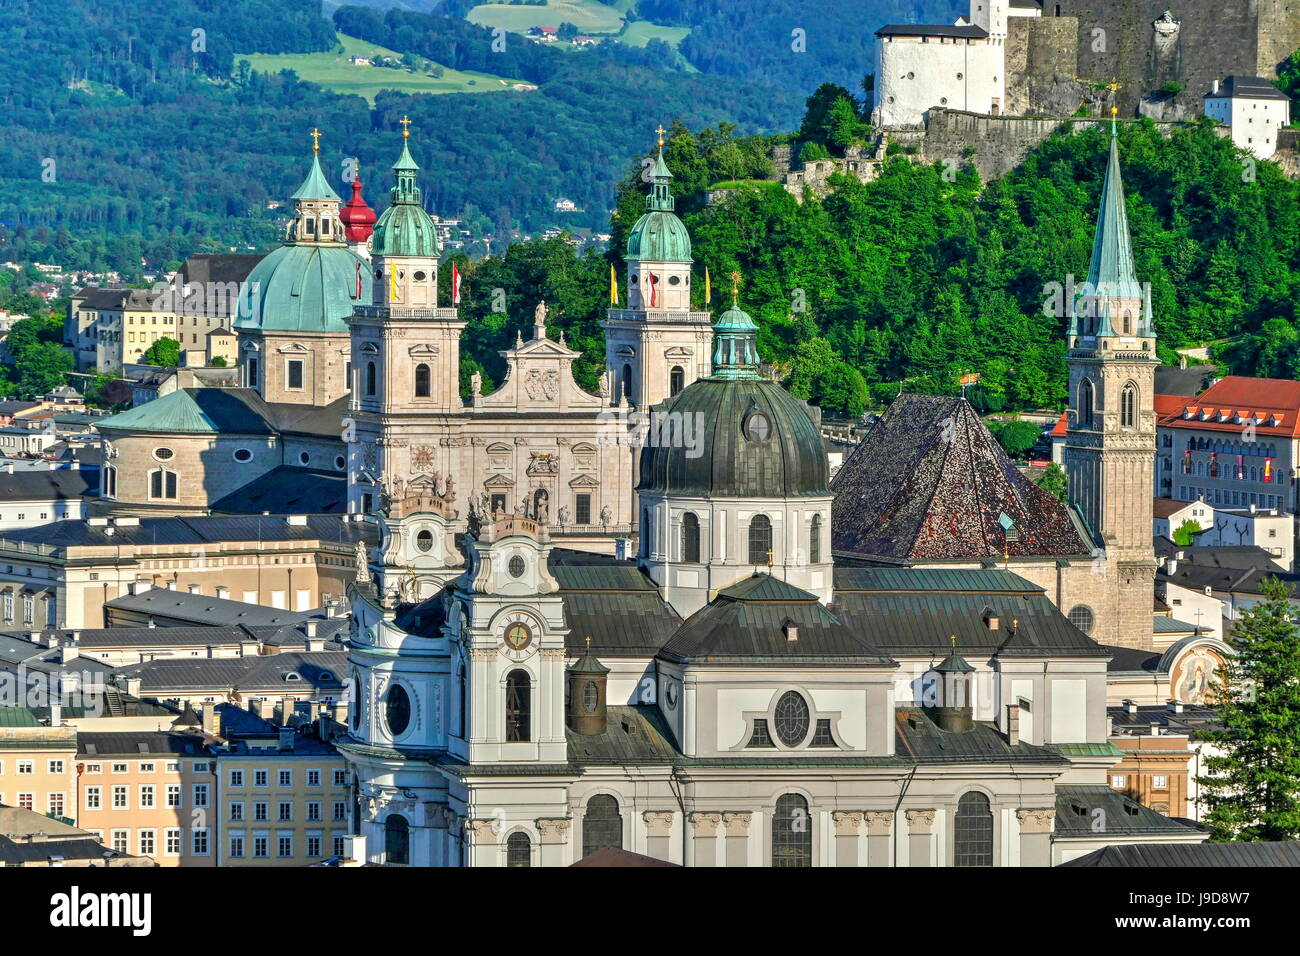 Vue vers la cathédrale, collégiale et la forteresse de Hohensalzburg, Salzbourg, Autriche, Europe Banque D'Images